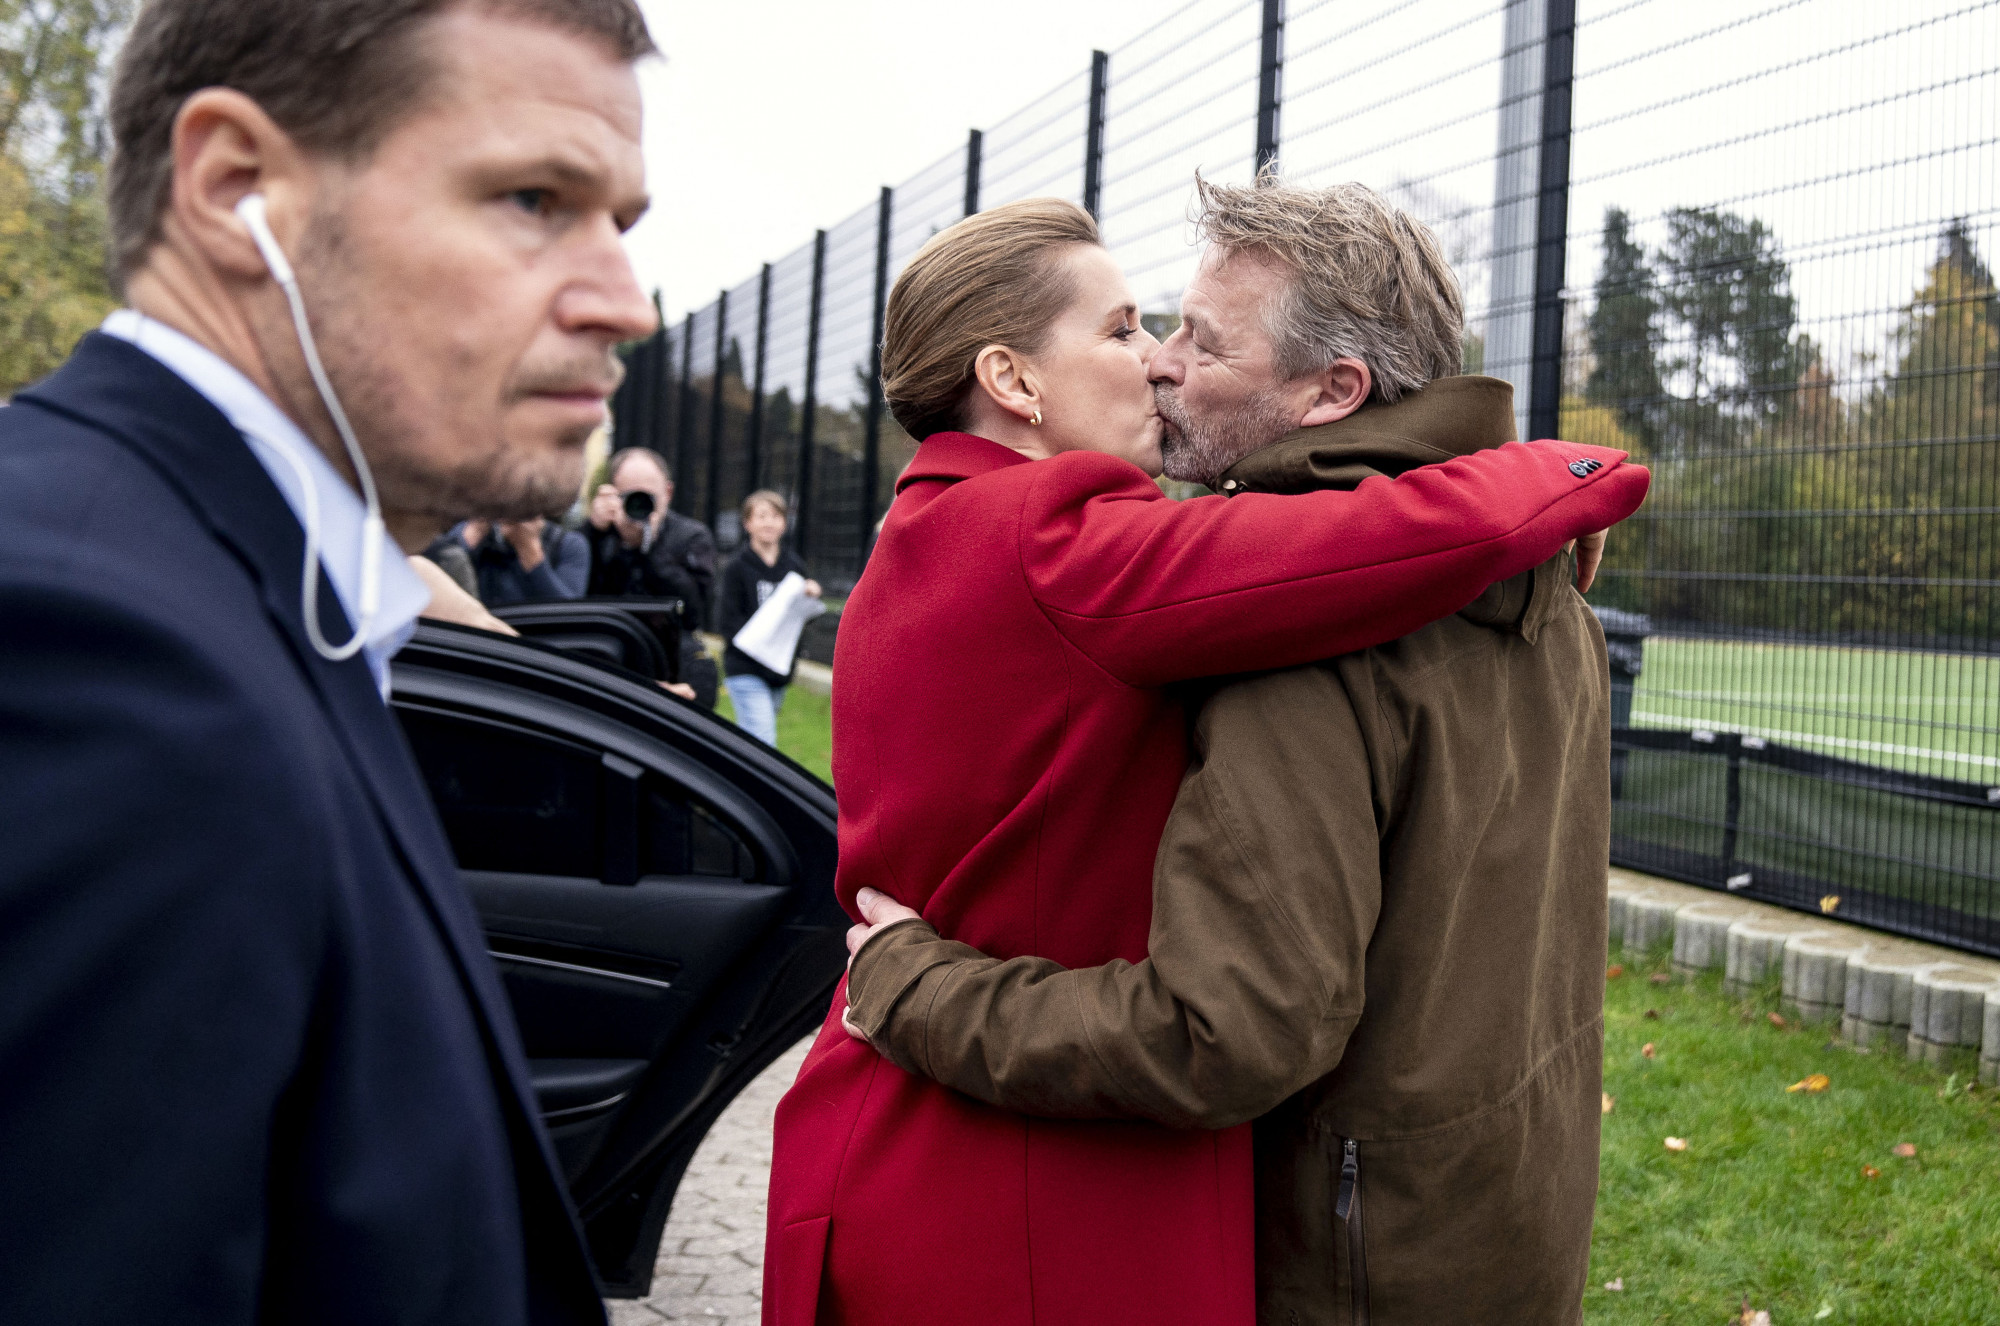 Mette Frederiksen miniszterelnök és férje a voksolás utáni felfokozott hangulatban